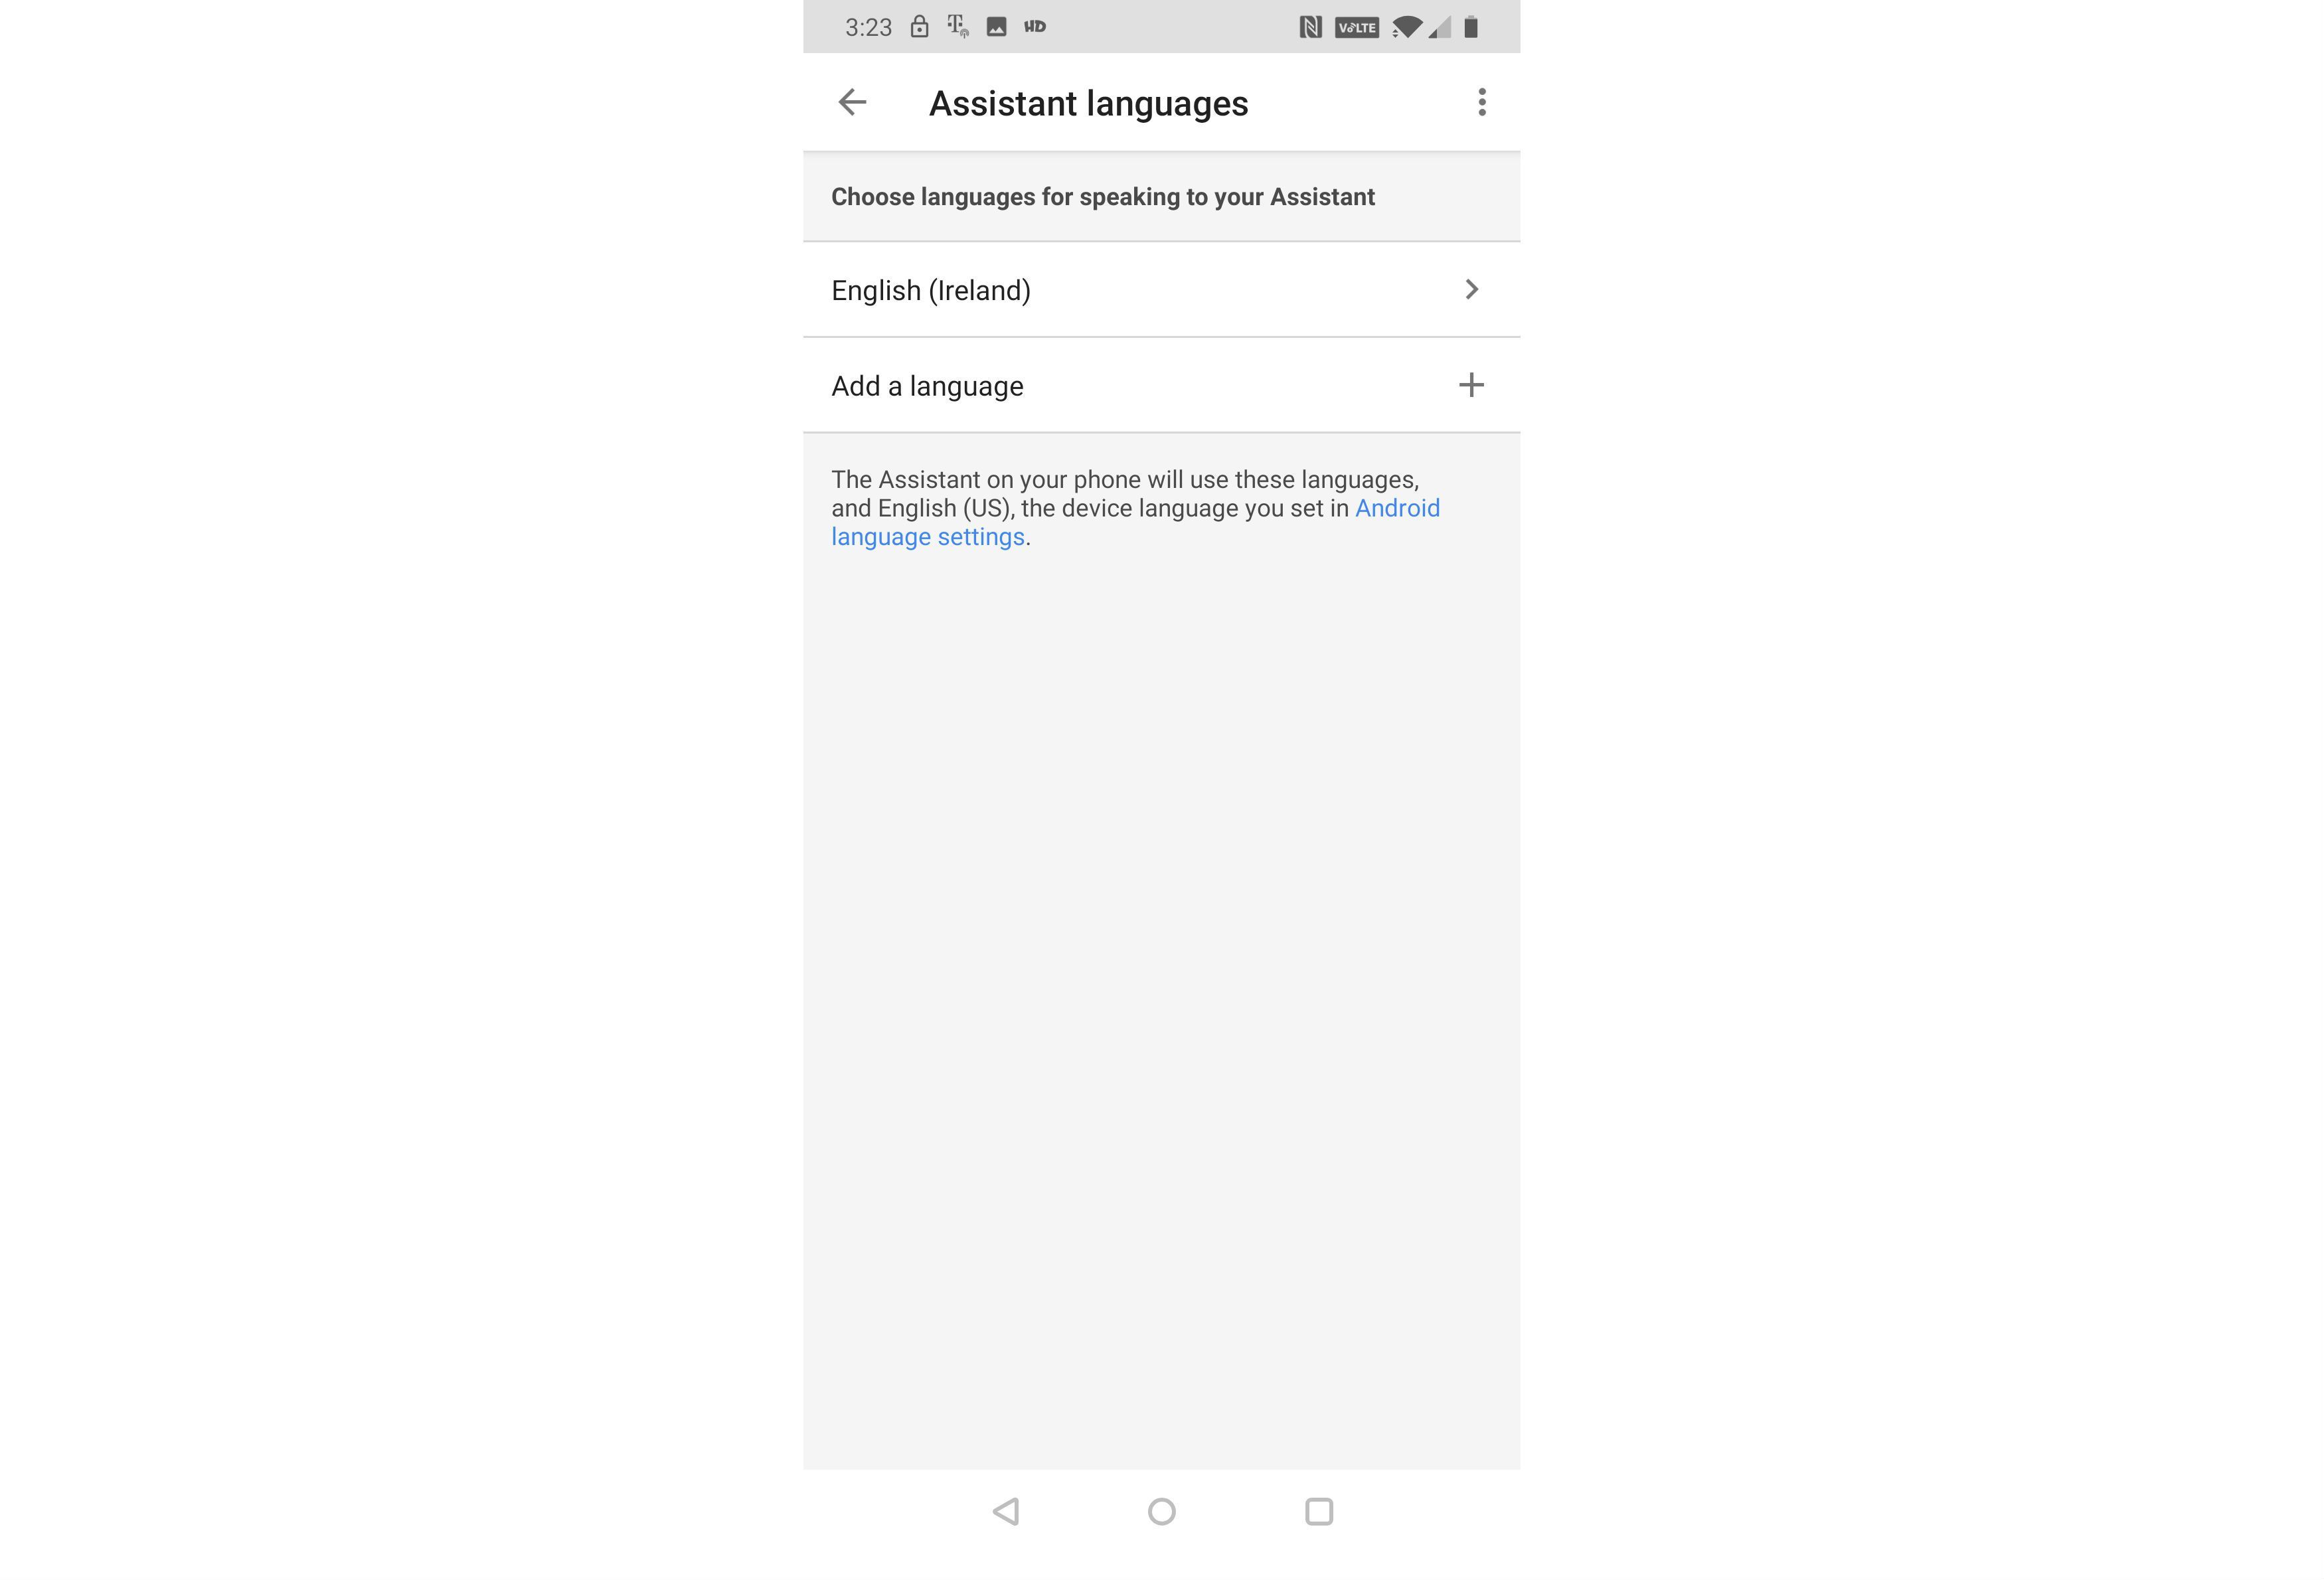 Снимок экрана с языковым меню помощника Google.